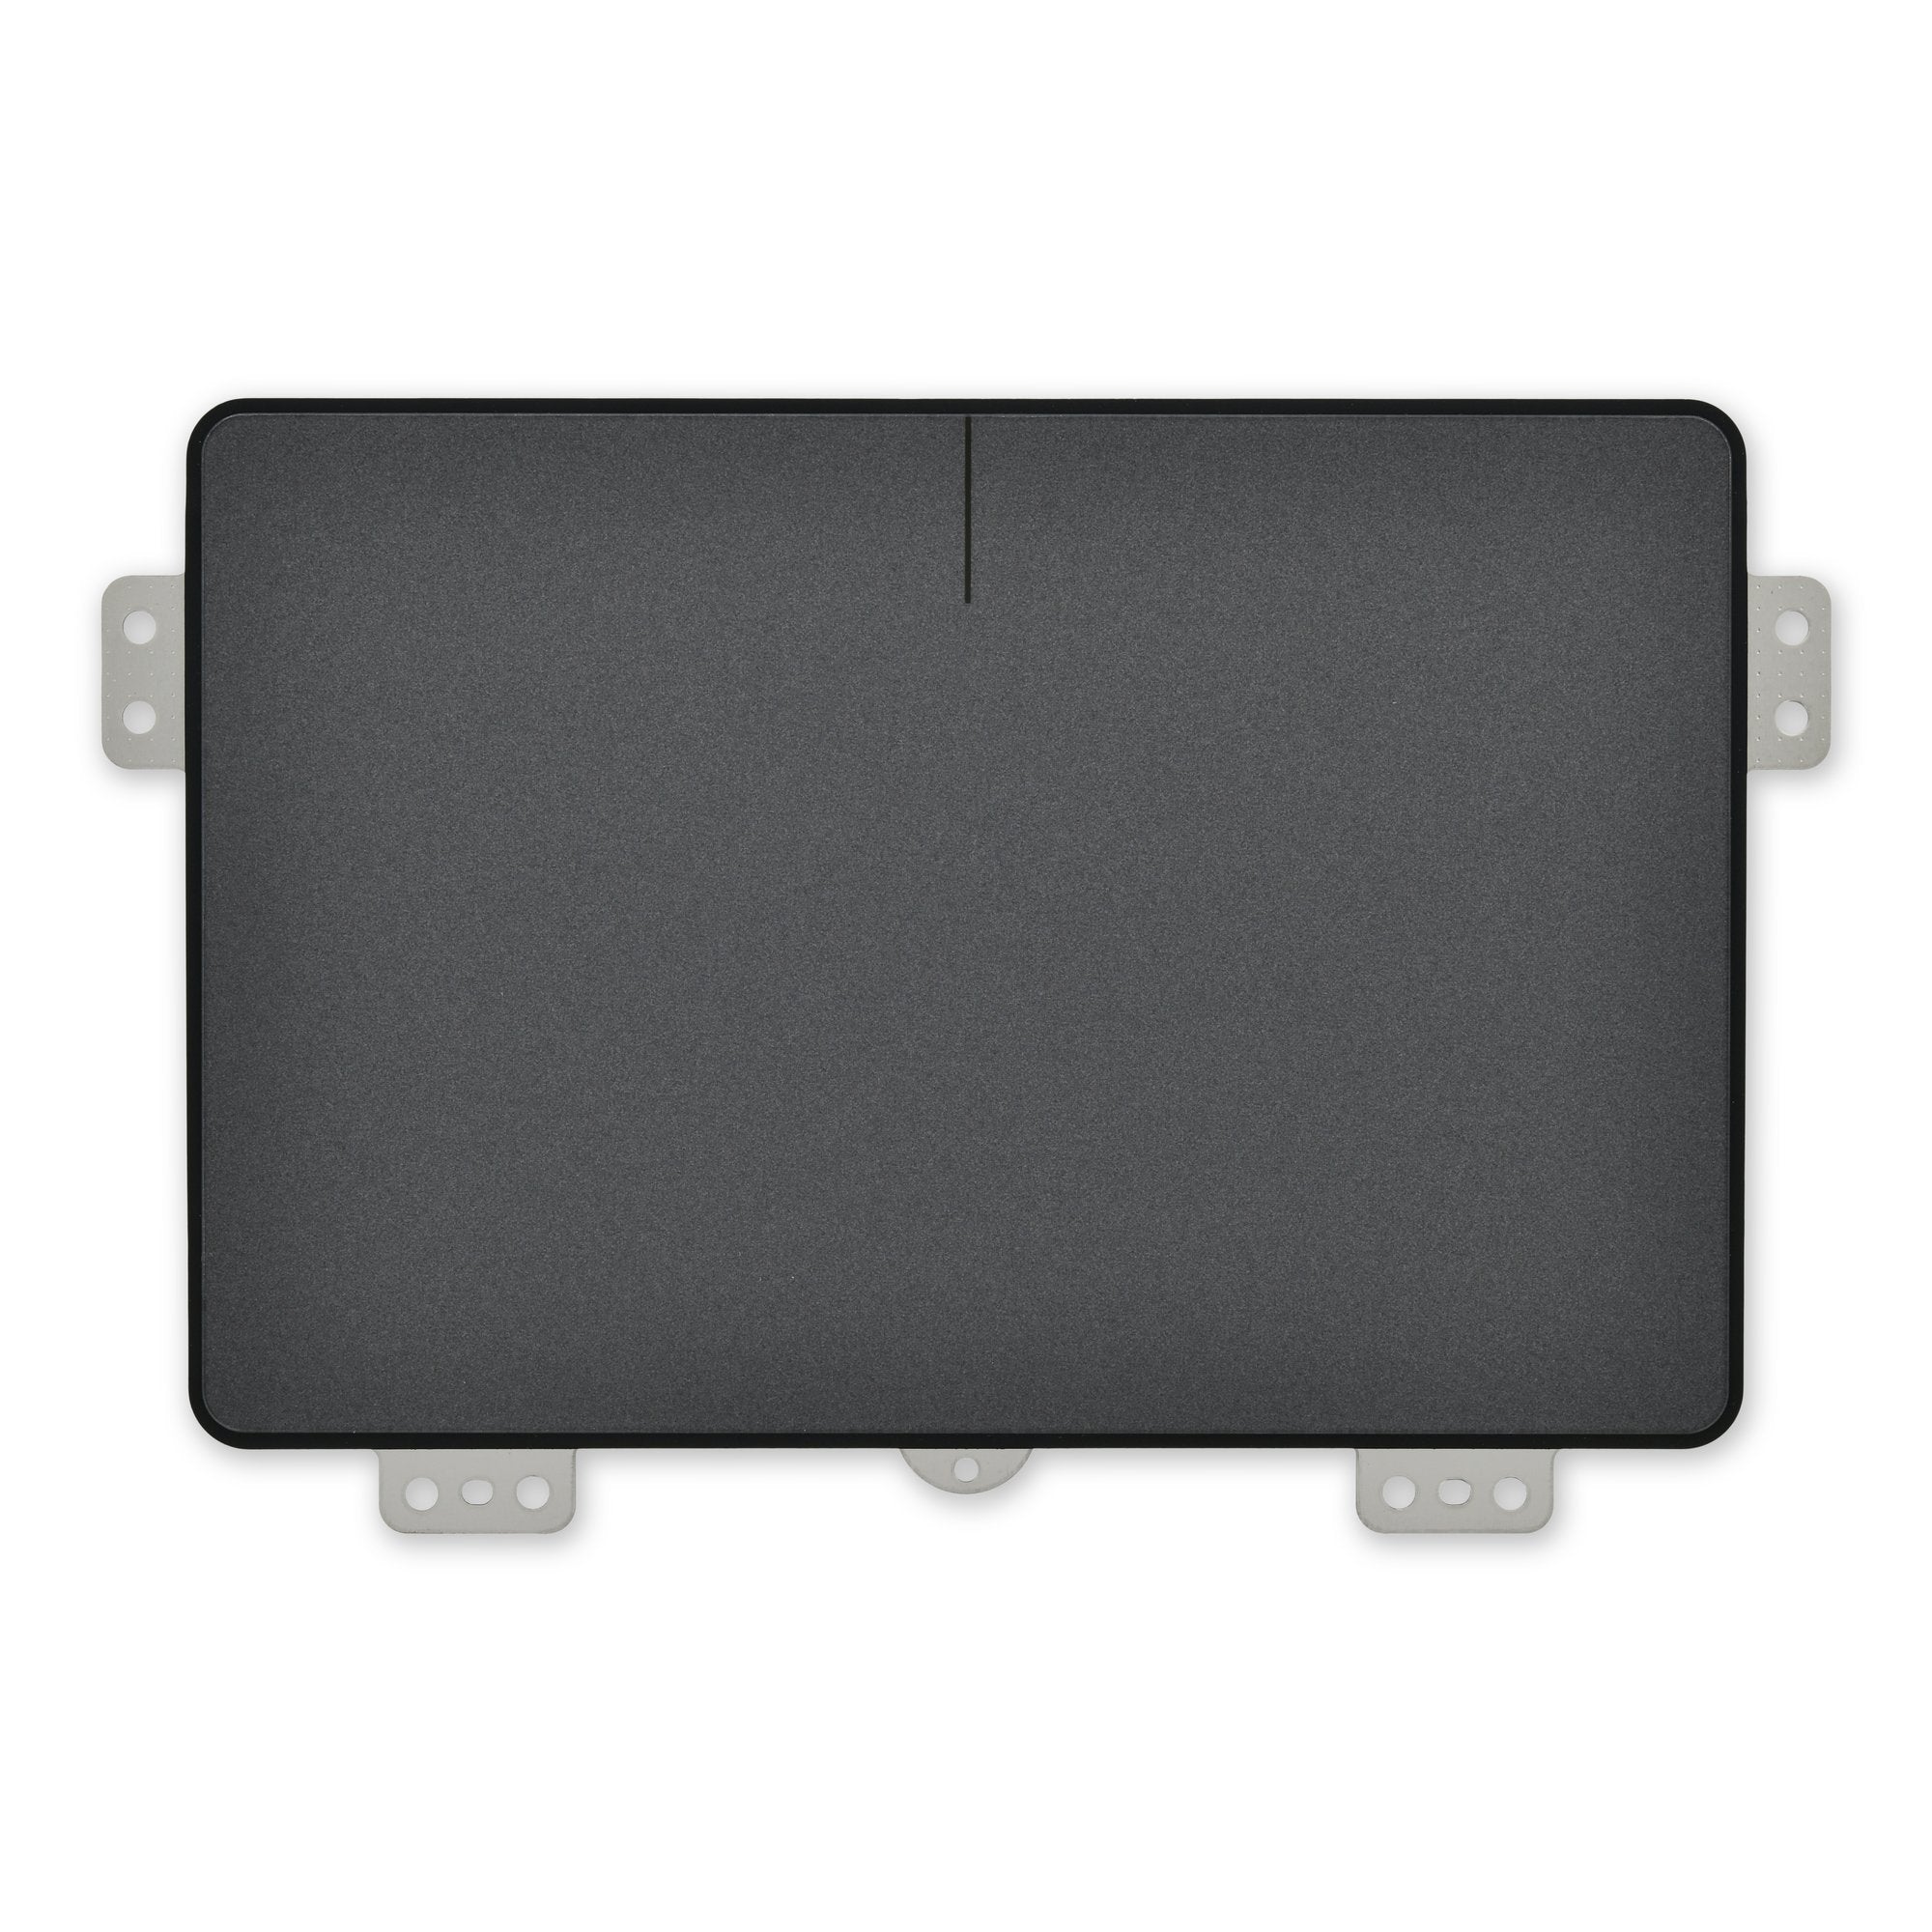 Lenovo IdeaPad Yoga 720-15 Touchpad - Genuine Dark Gray New